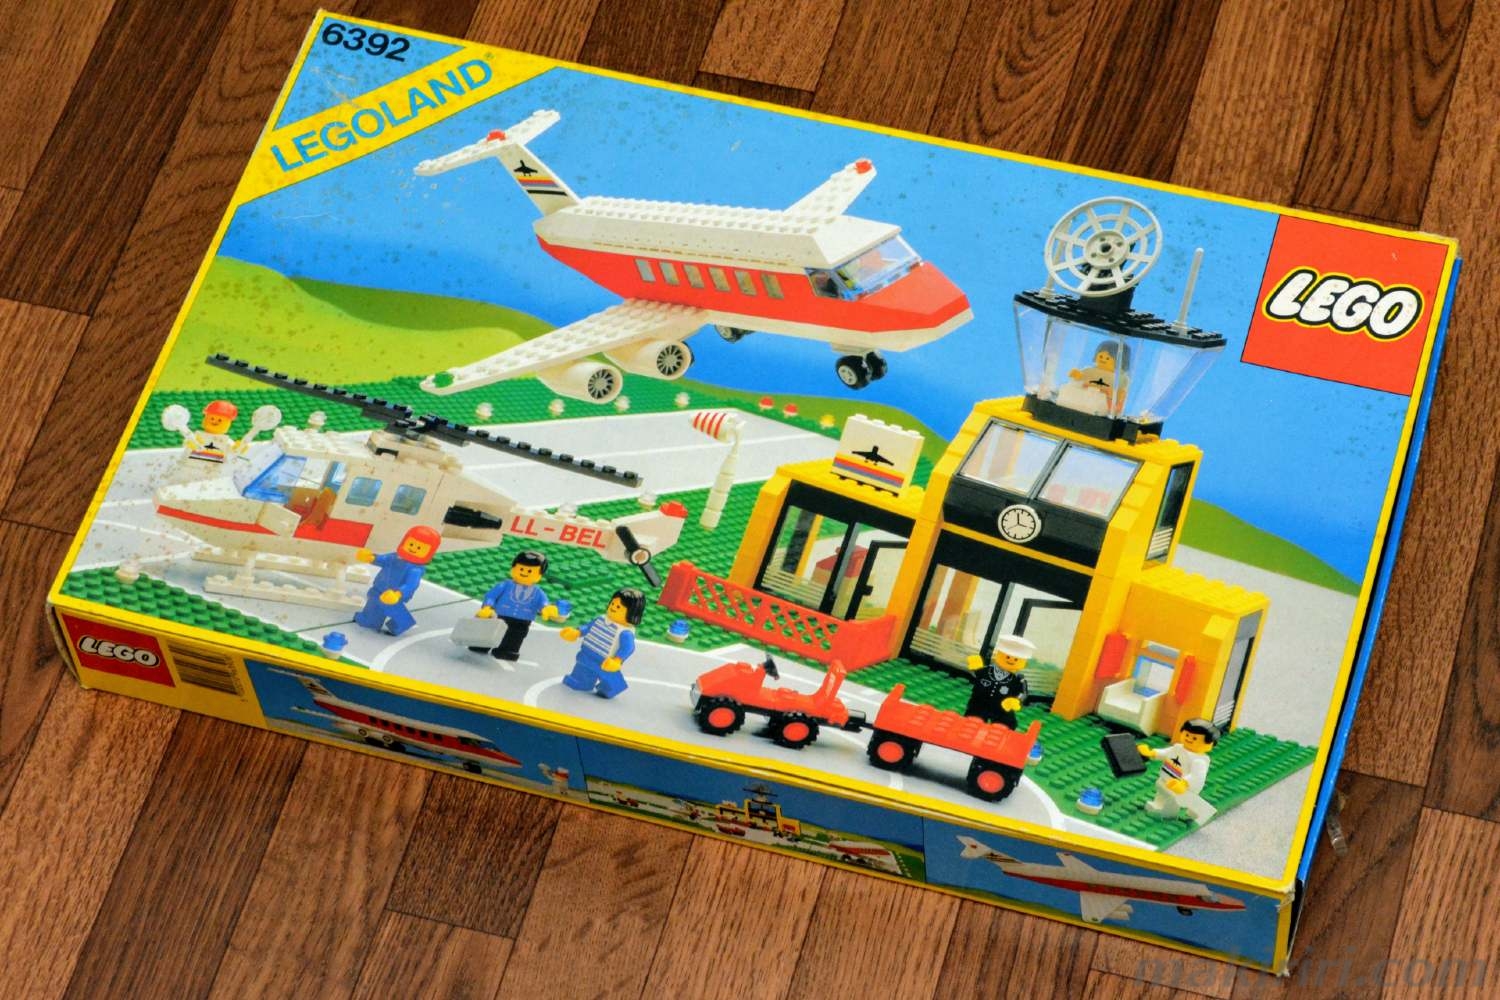 発掘なつレゴ】LEGOLAND 6392 エアポート(1985年発売) | 田舎で趣味 